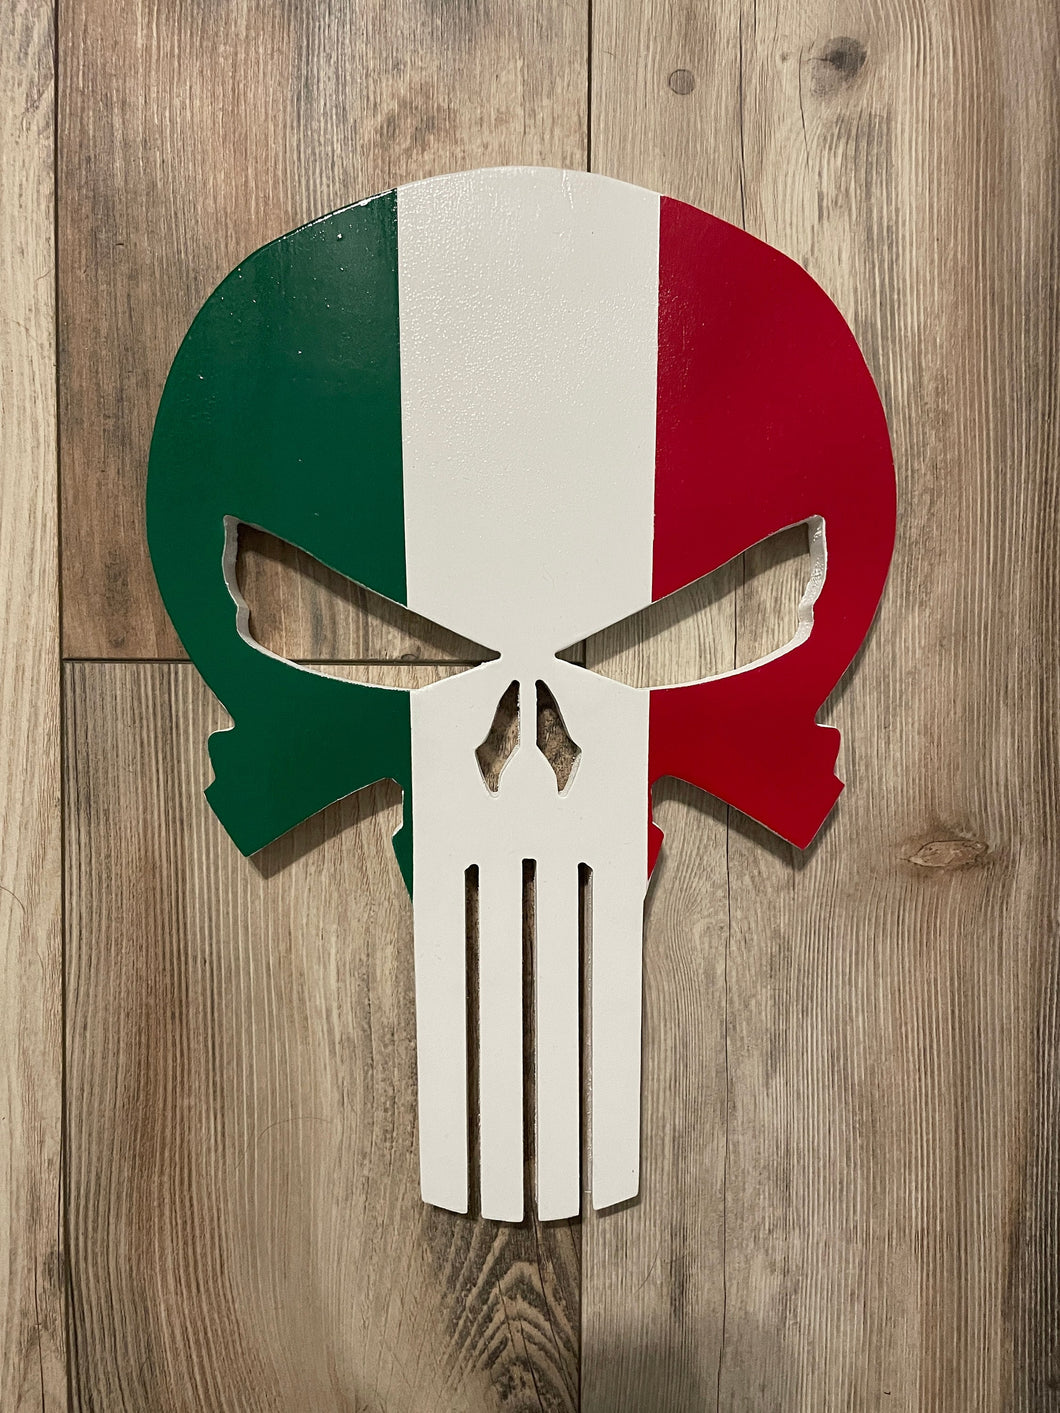 Punisher Skull Italian Wood Flag, Punisher, Wood Flag, Italian Flag, Italy Flag, Italian Pride, Italian, Italy, Wood Decor